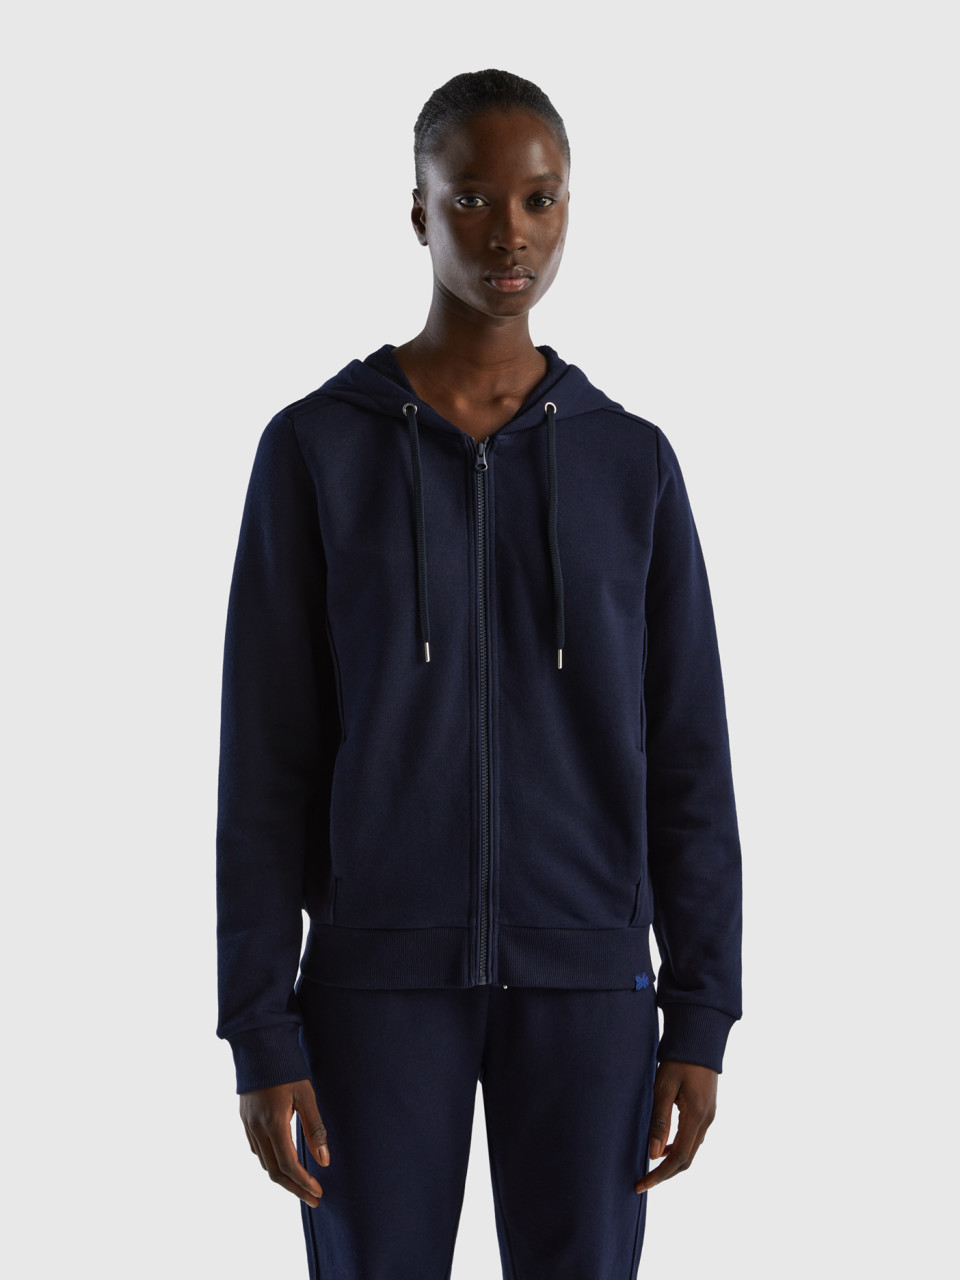 Benetton, 100% Cotton Sweatshirt With Zip And Hood, Dark Blue, Women